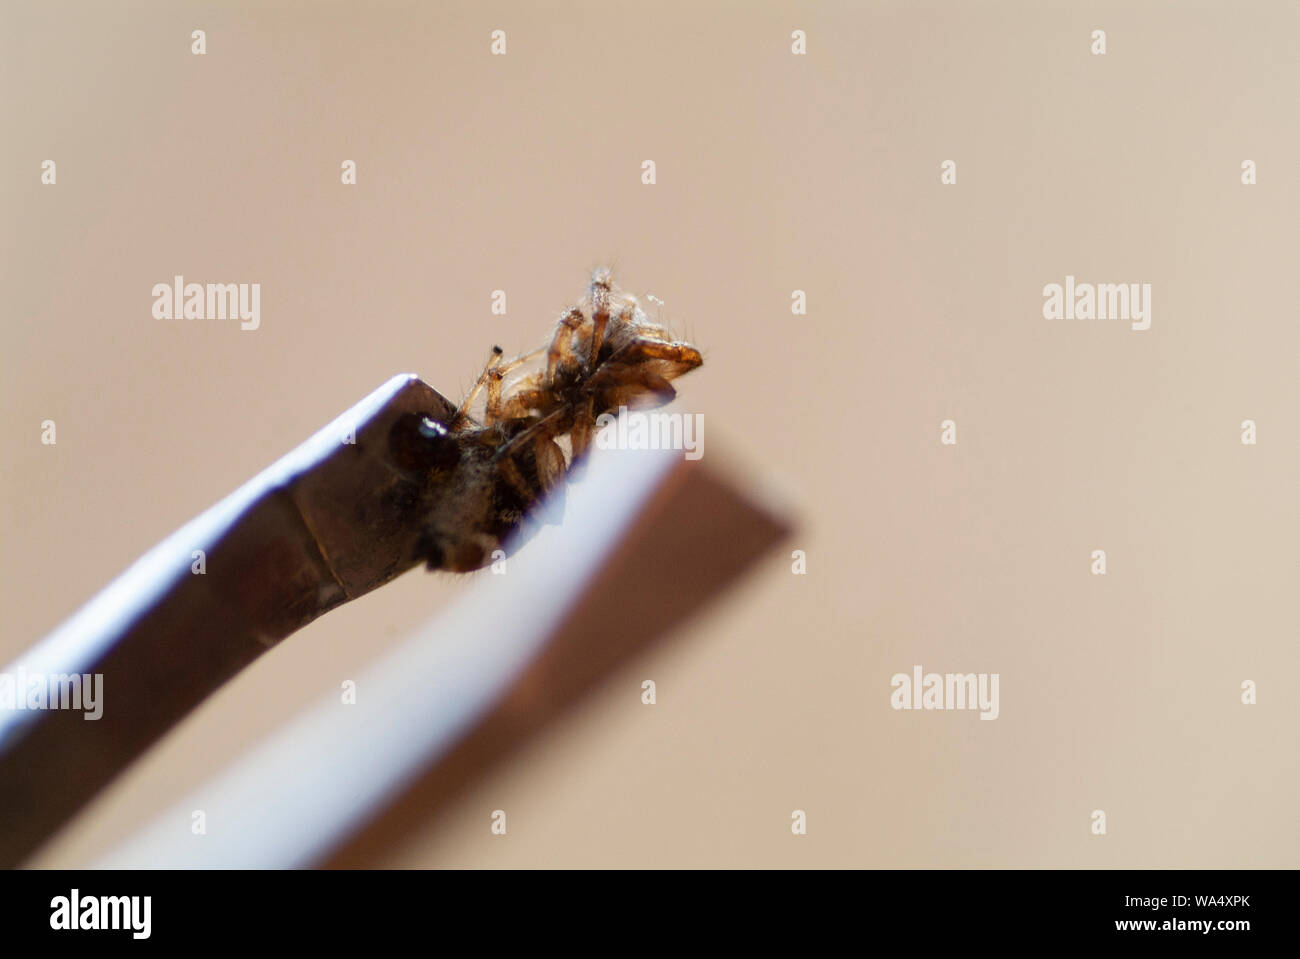 Autopsie ARACHNID : examen approfondi et recherche d'un corps mort d'araignées Banque D'Images